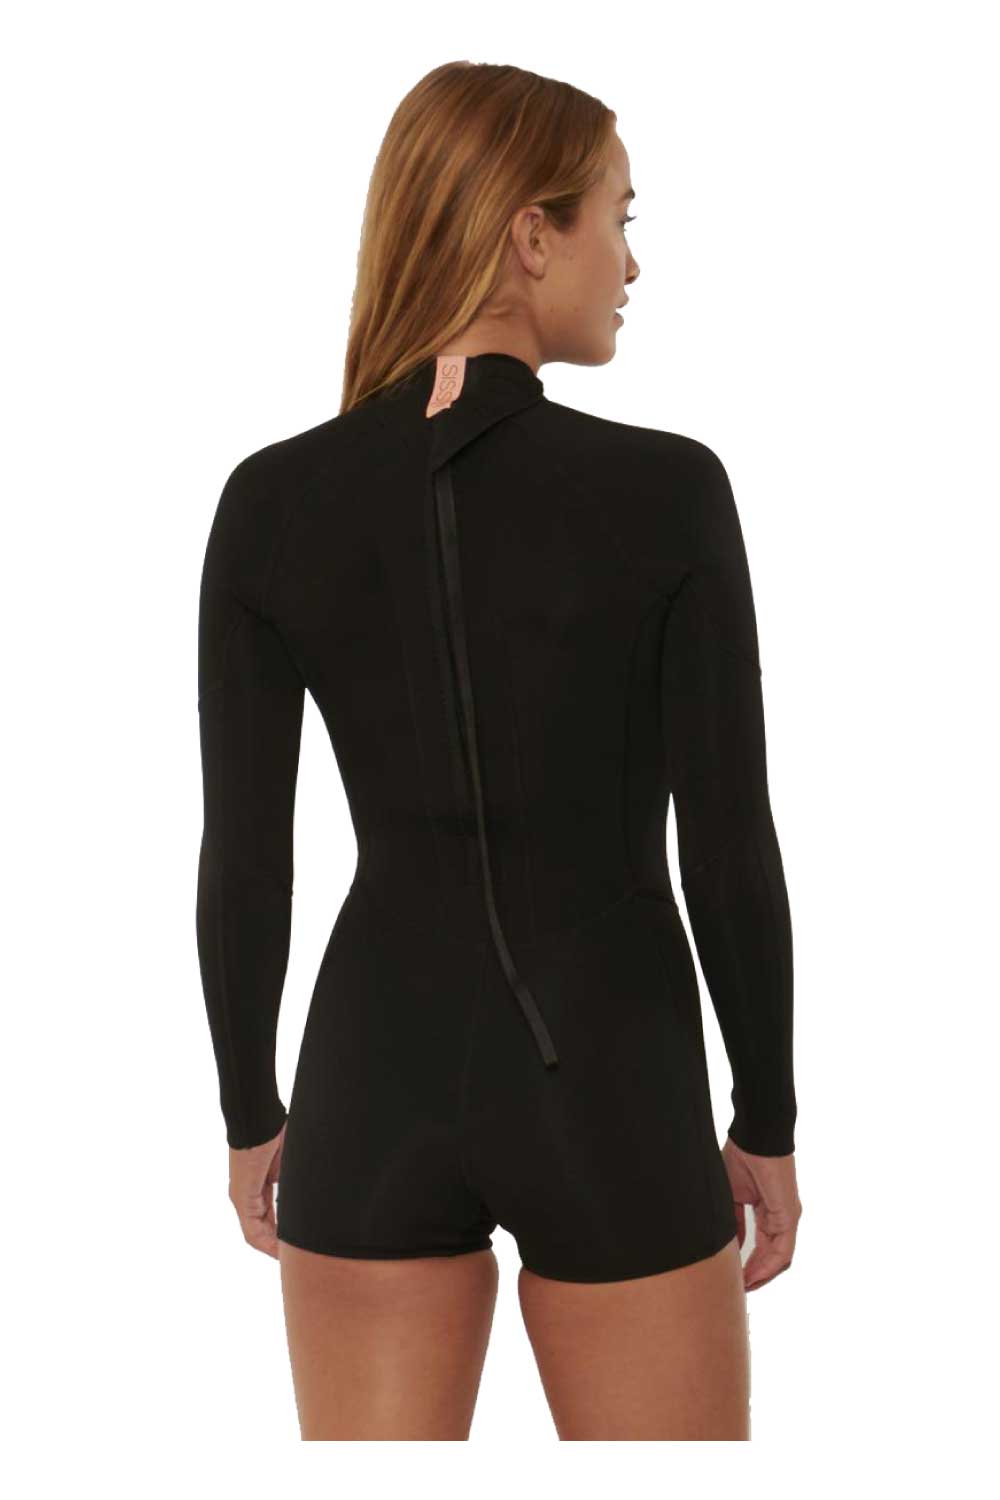 Sisstrevolution Women's 7 Seas 2/2mm Long Sleeve Spring Suit